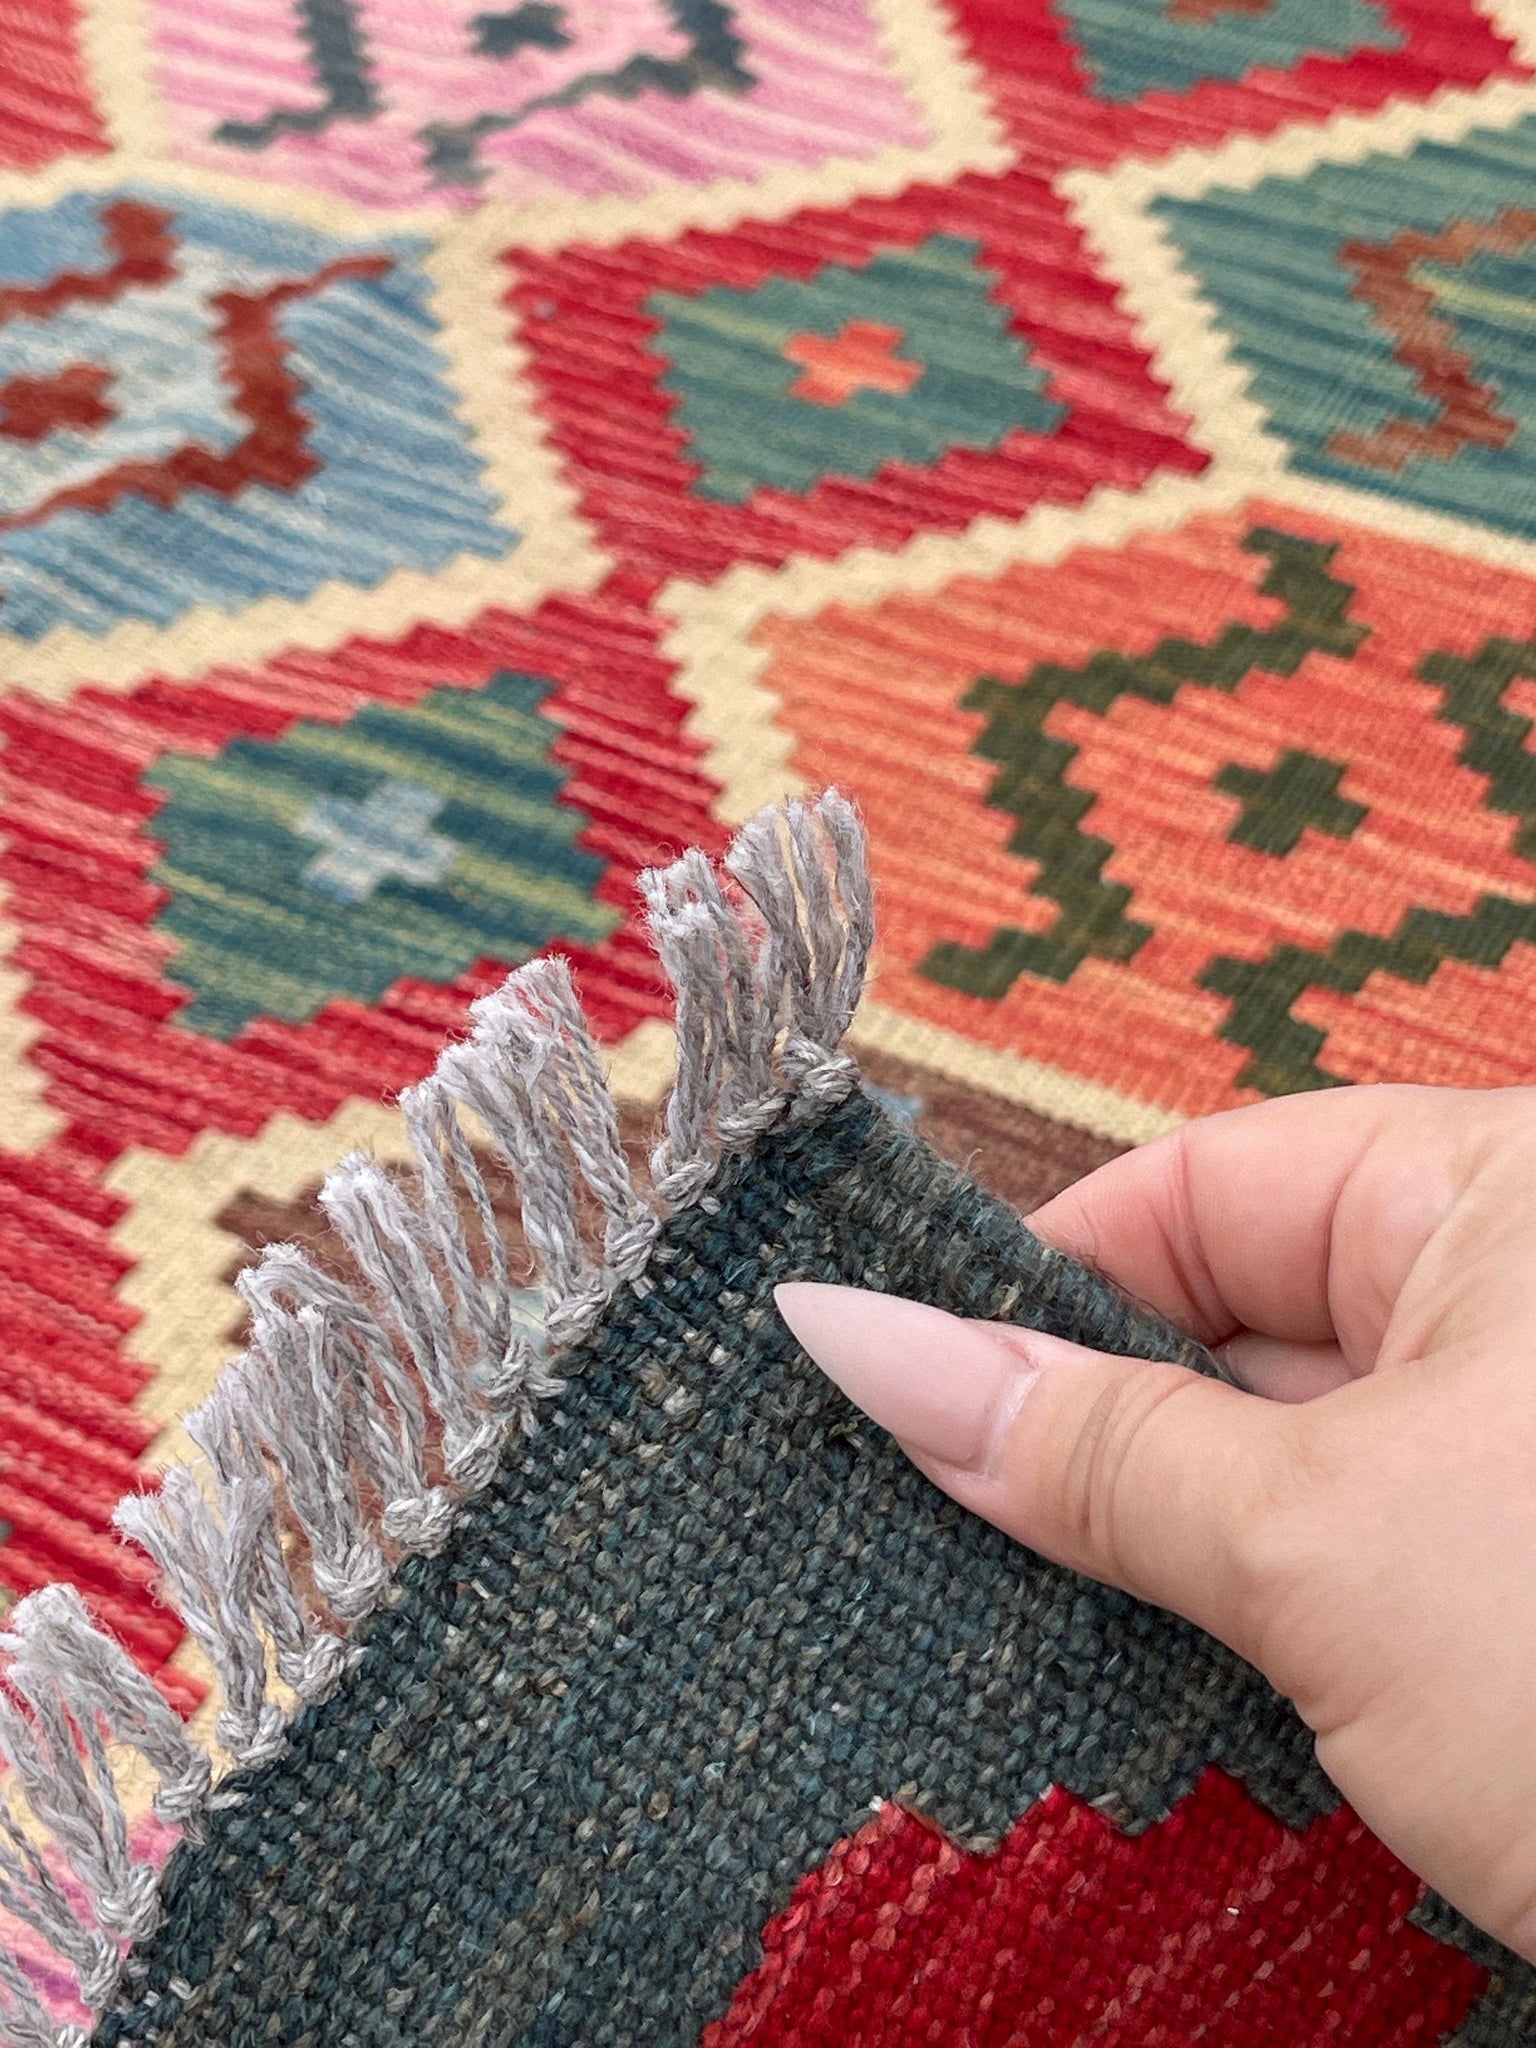 7x10 (215x305) Handmade Afghan Kilim Flatweave Rug 